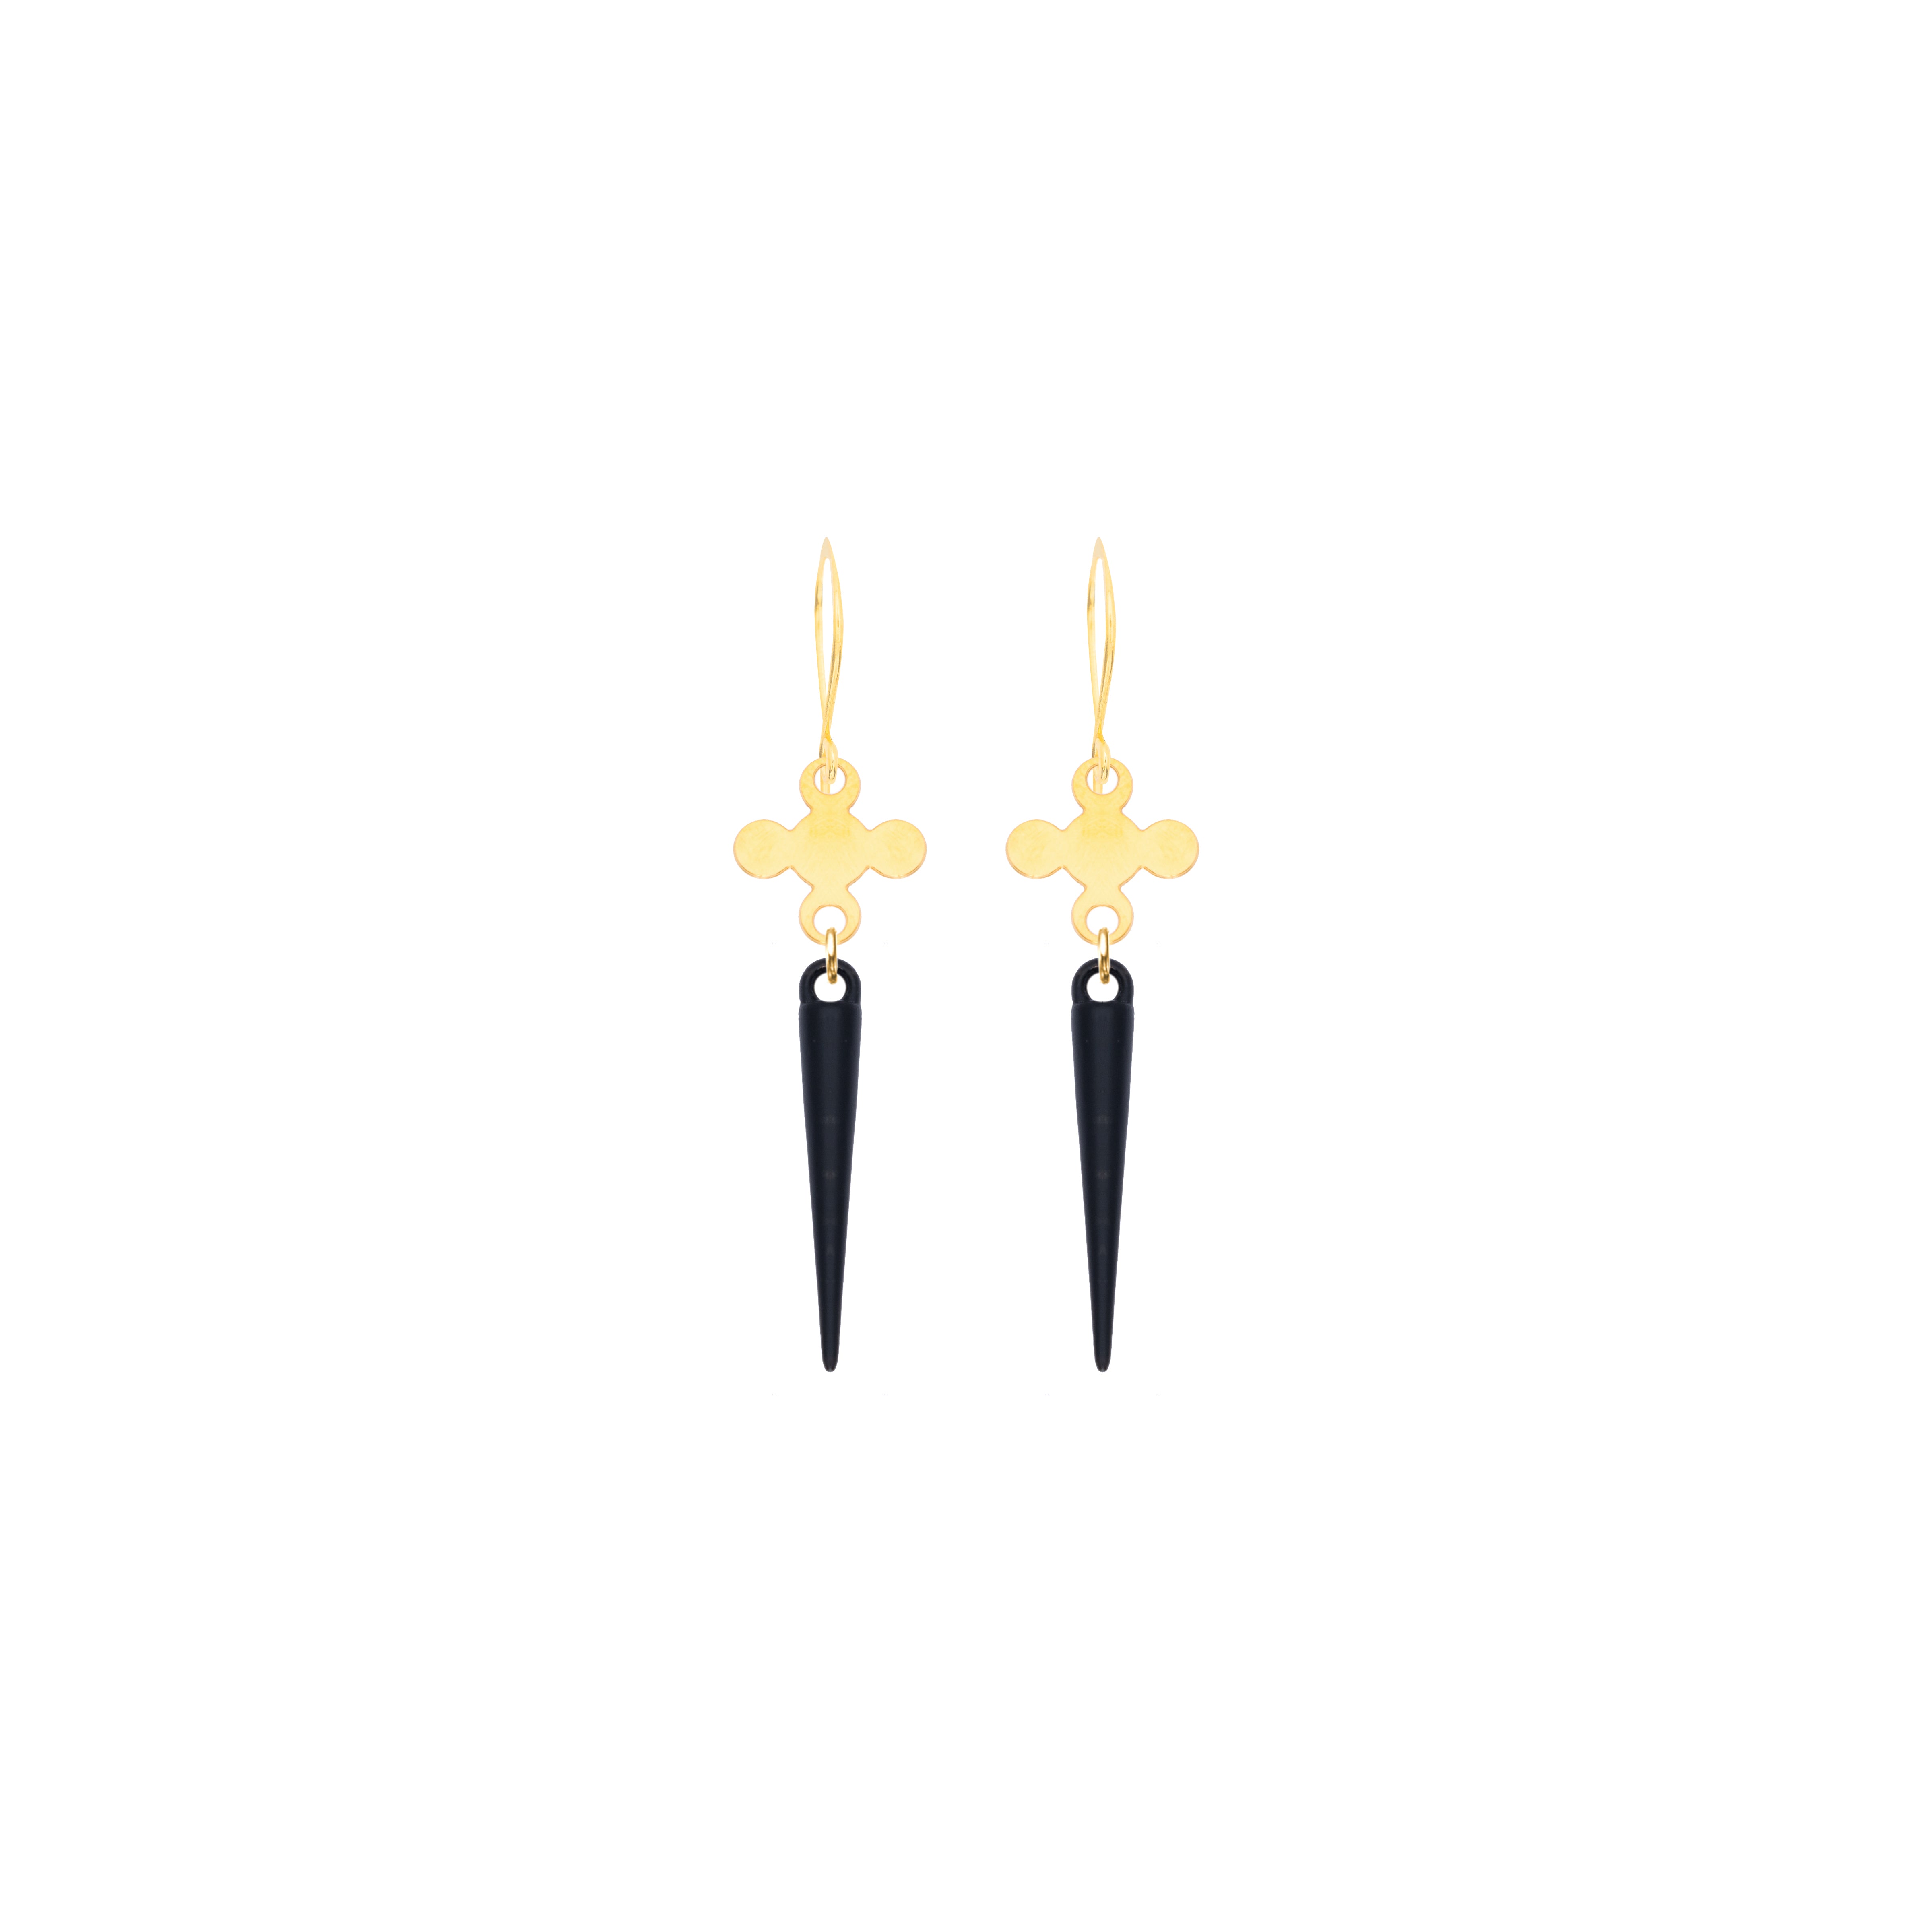 Earrings for Men - Quatrefoil Earrings with Spikes